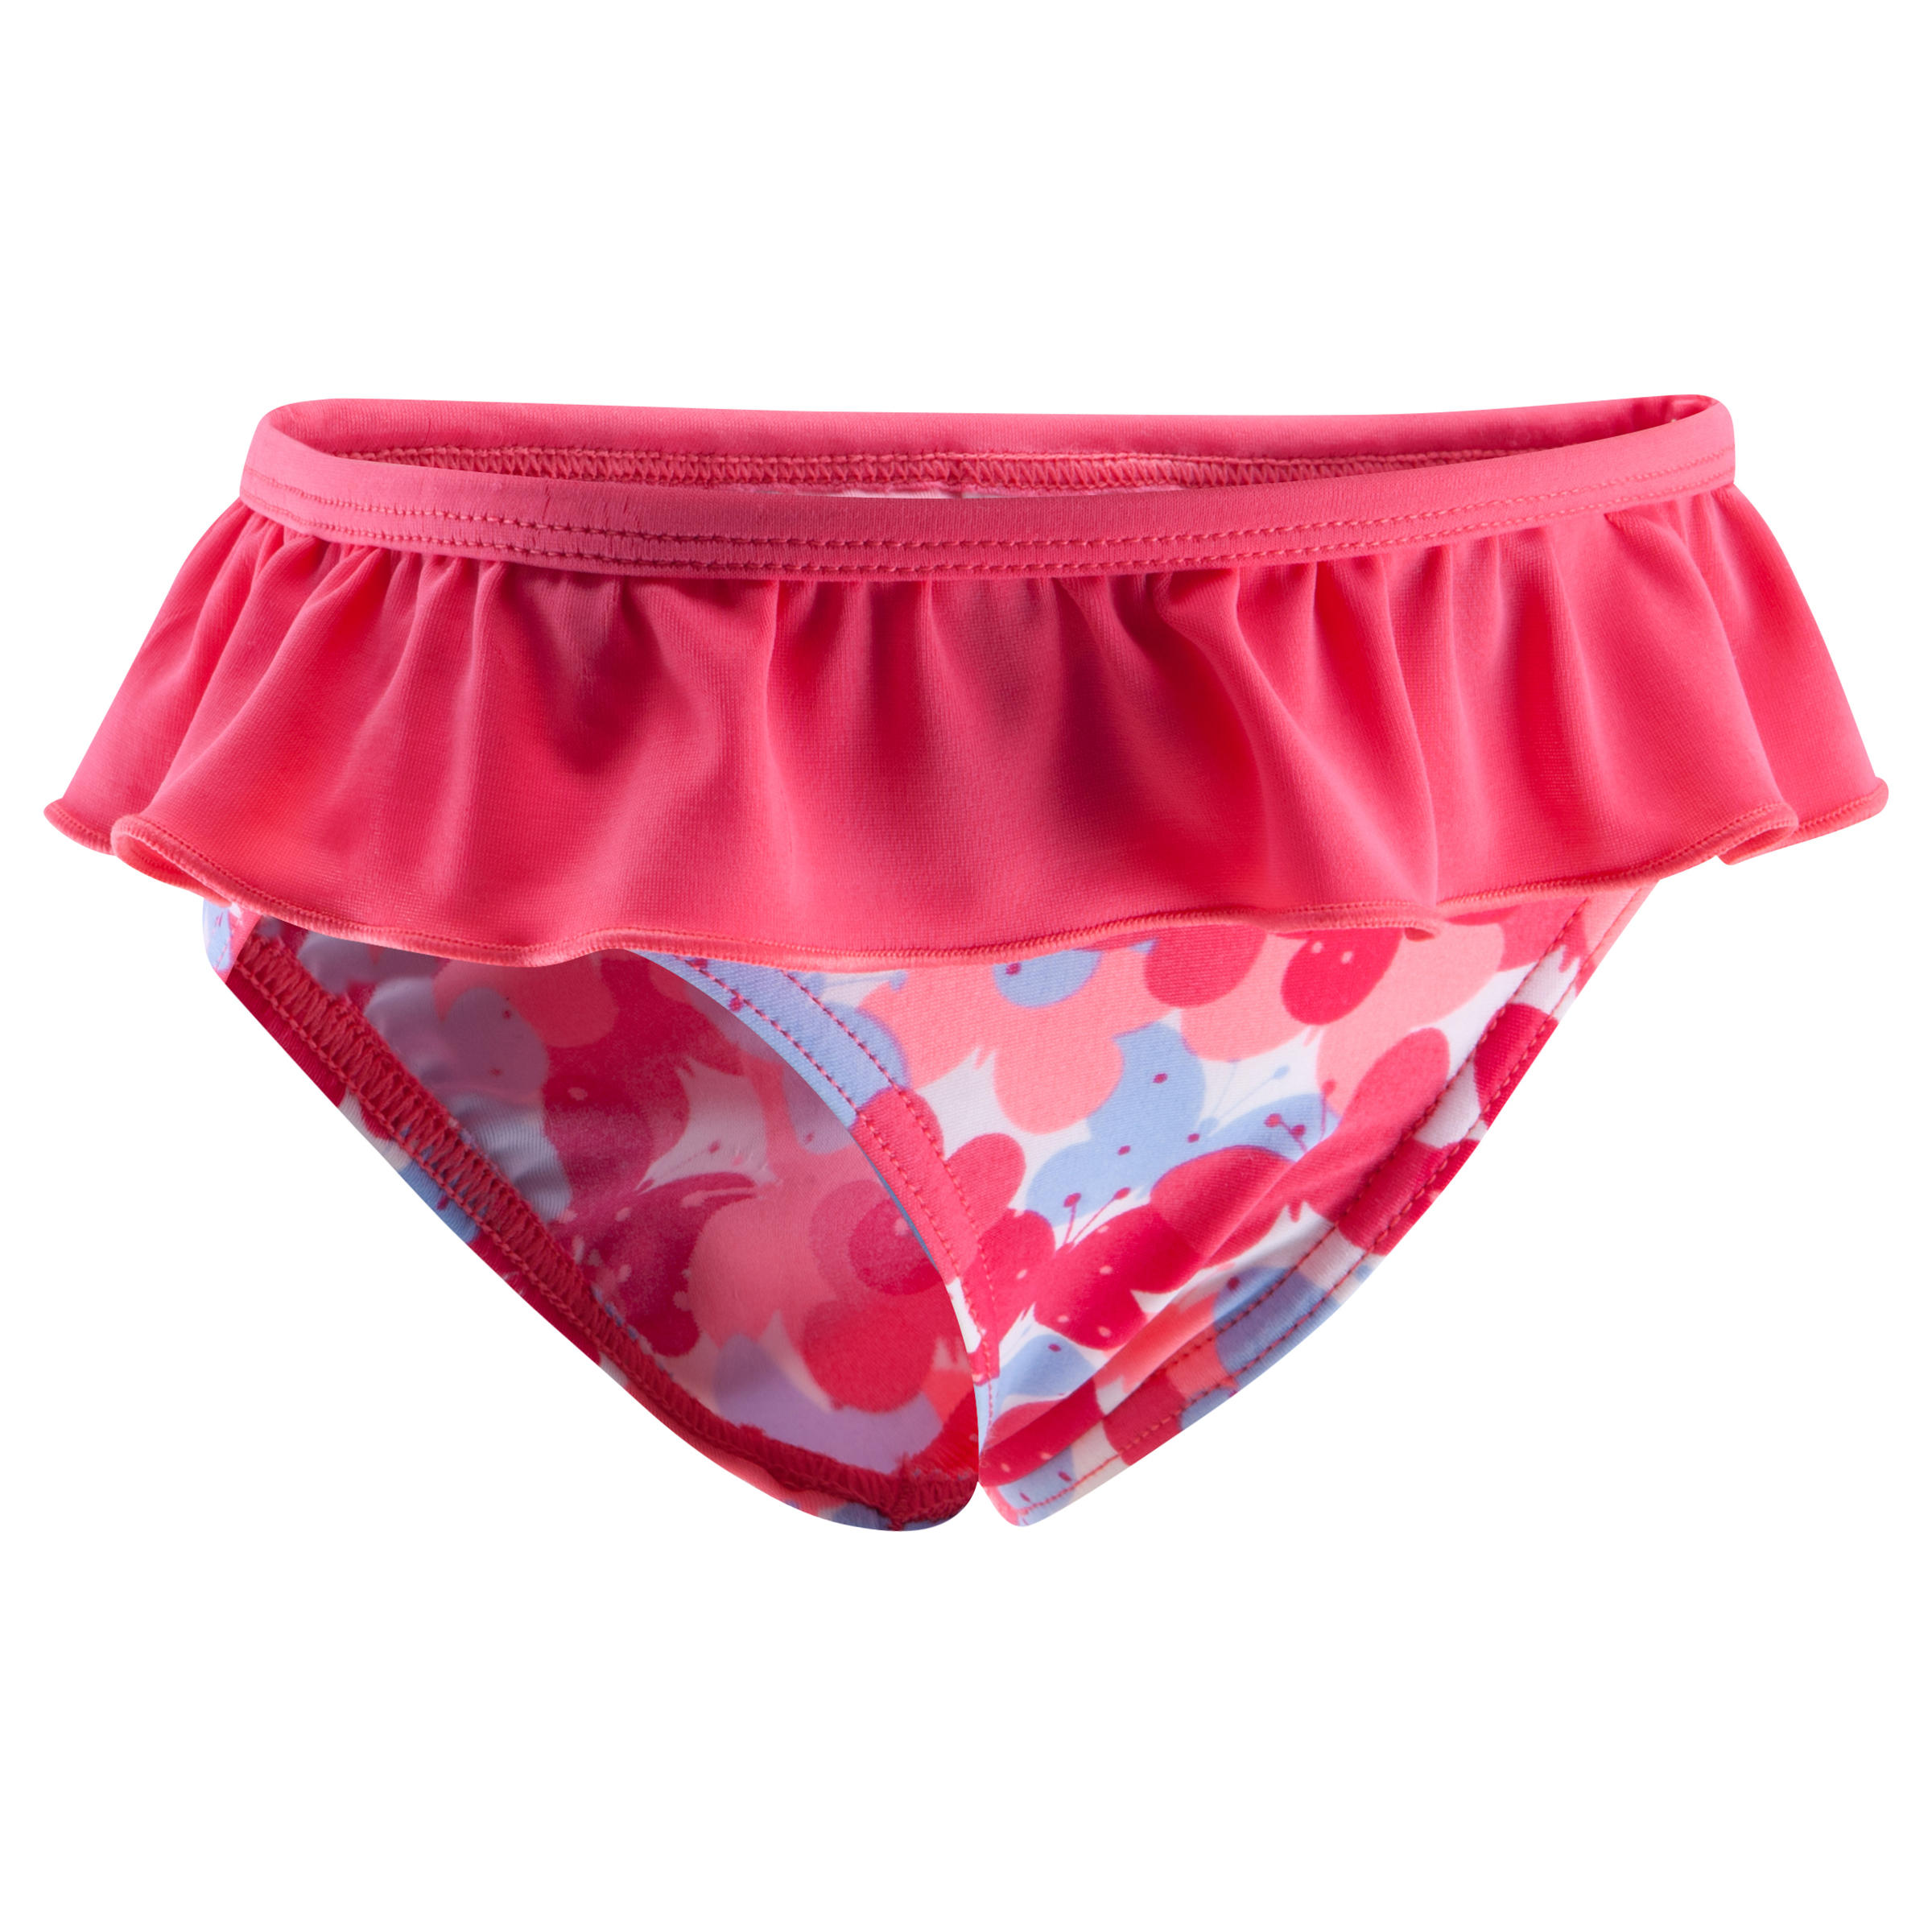 NABAIJI Baby Girls' One-Piece Swim Briefs pink butterfly print